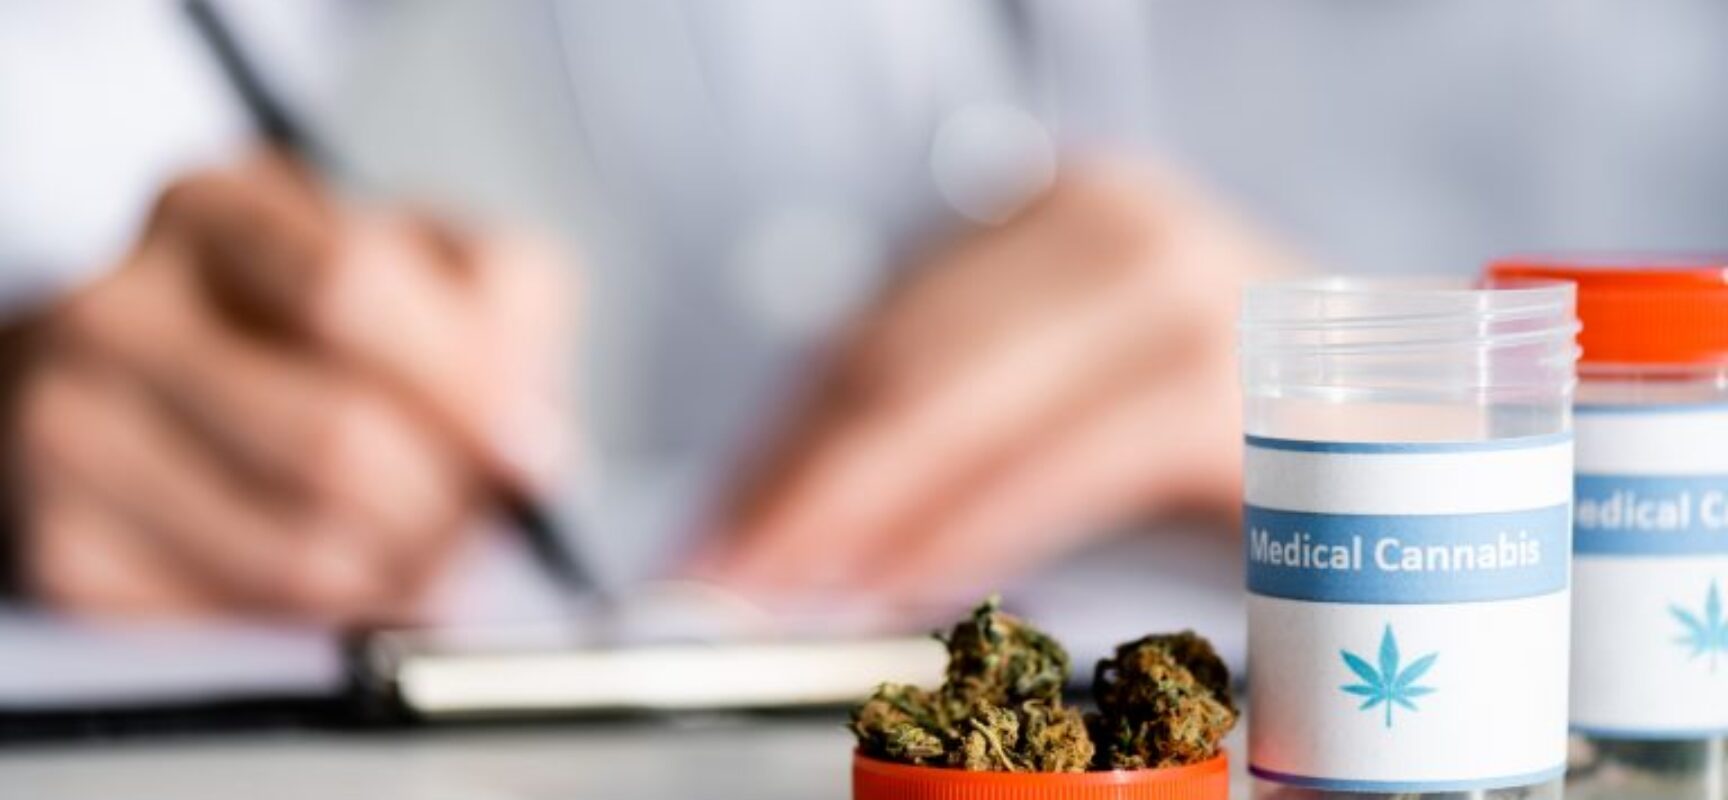 Cadeia produtiva da Cannabis para fins medicinais é tema de audiência na próxima terça